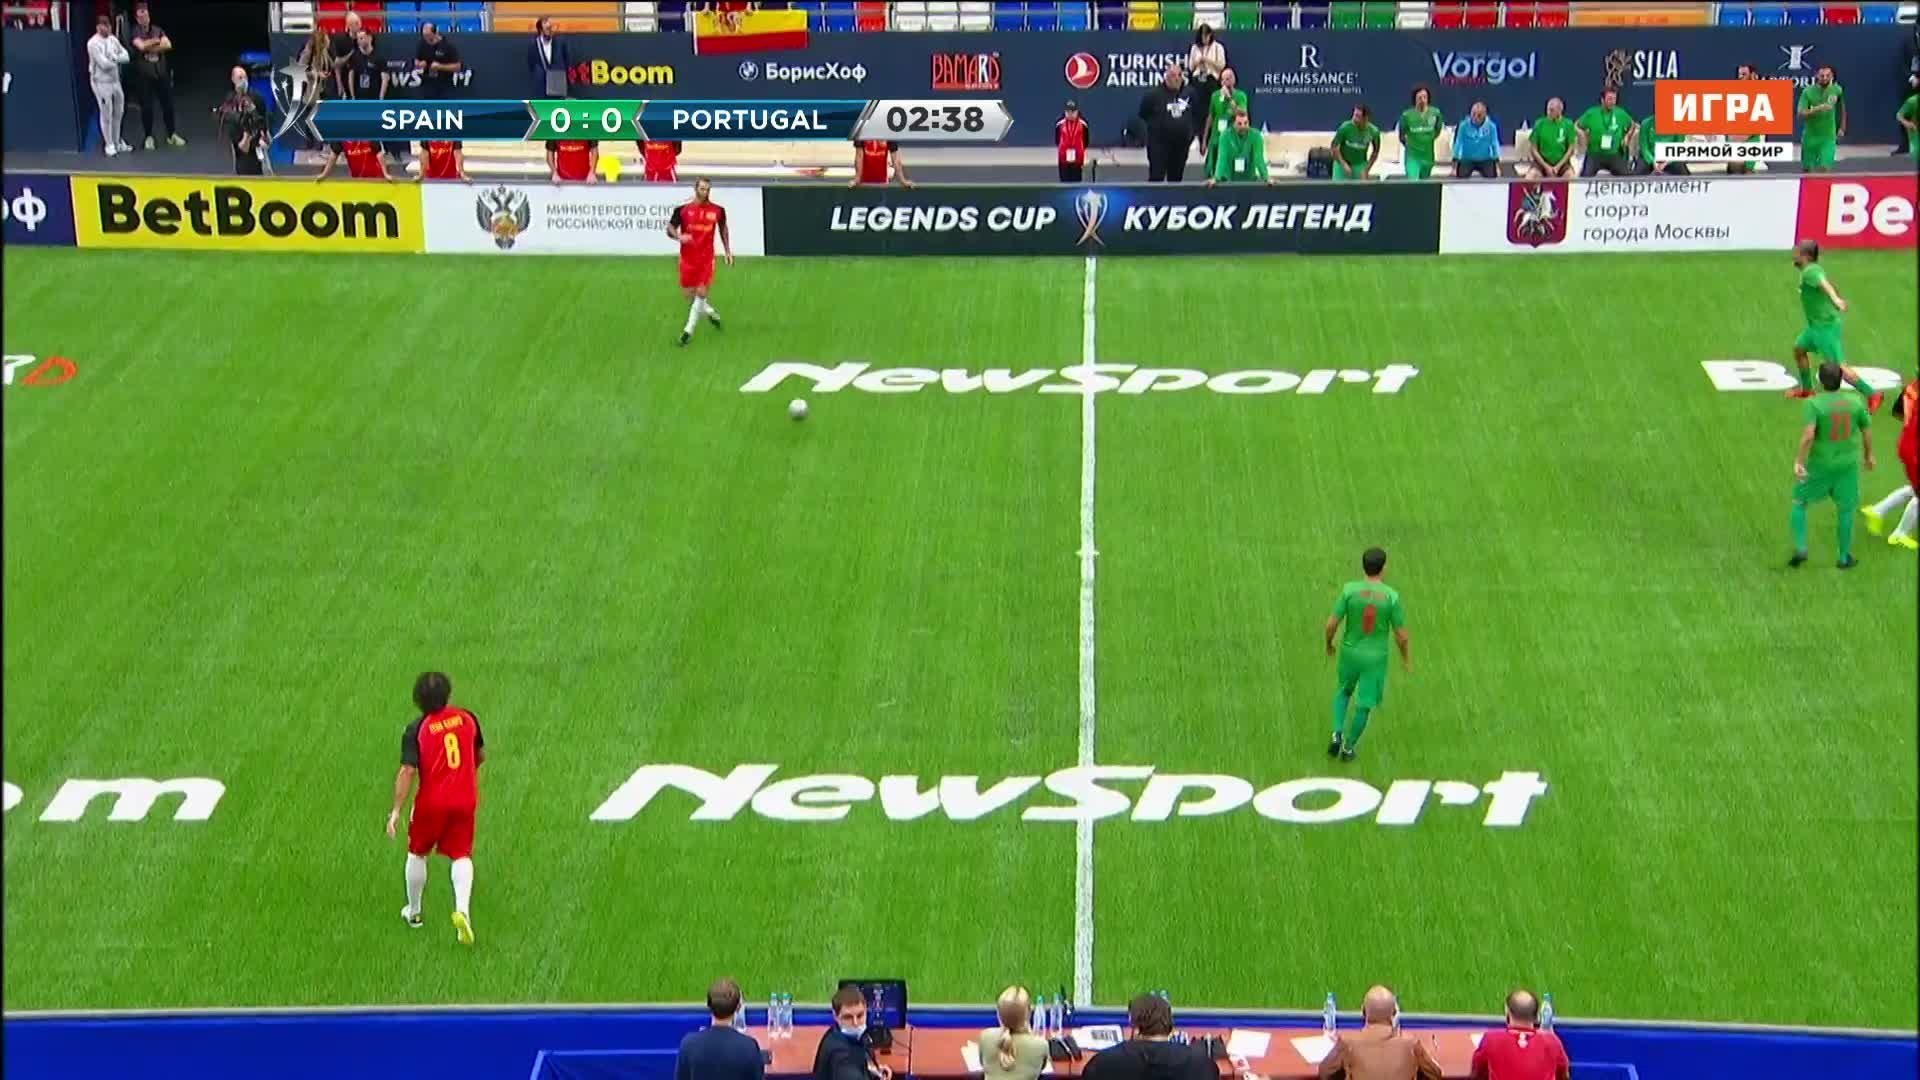 Футбол португалия5 3 испания видео